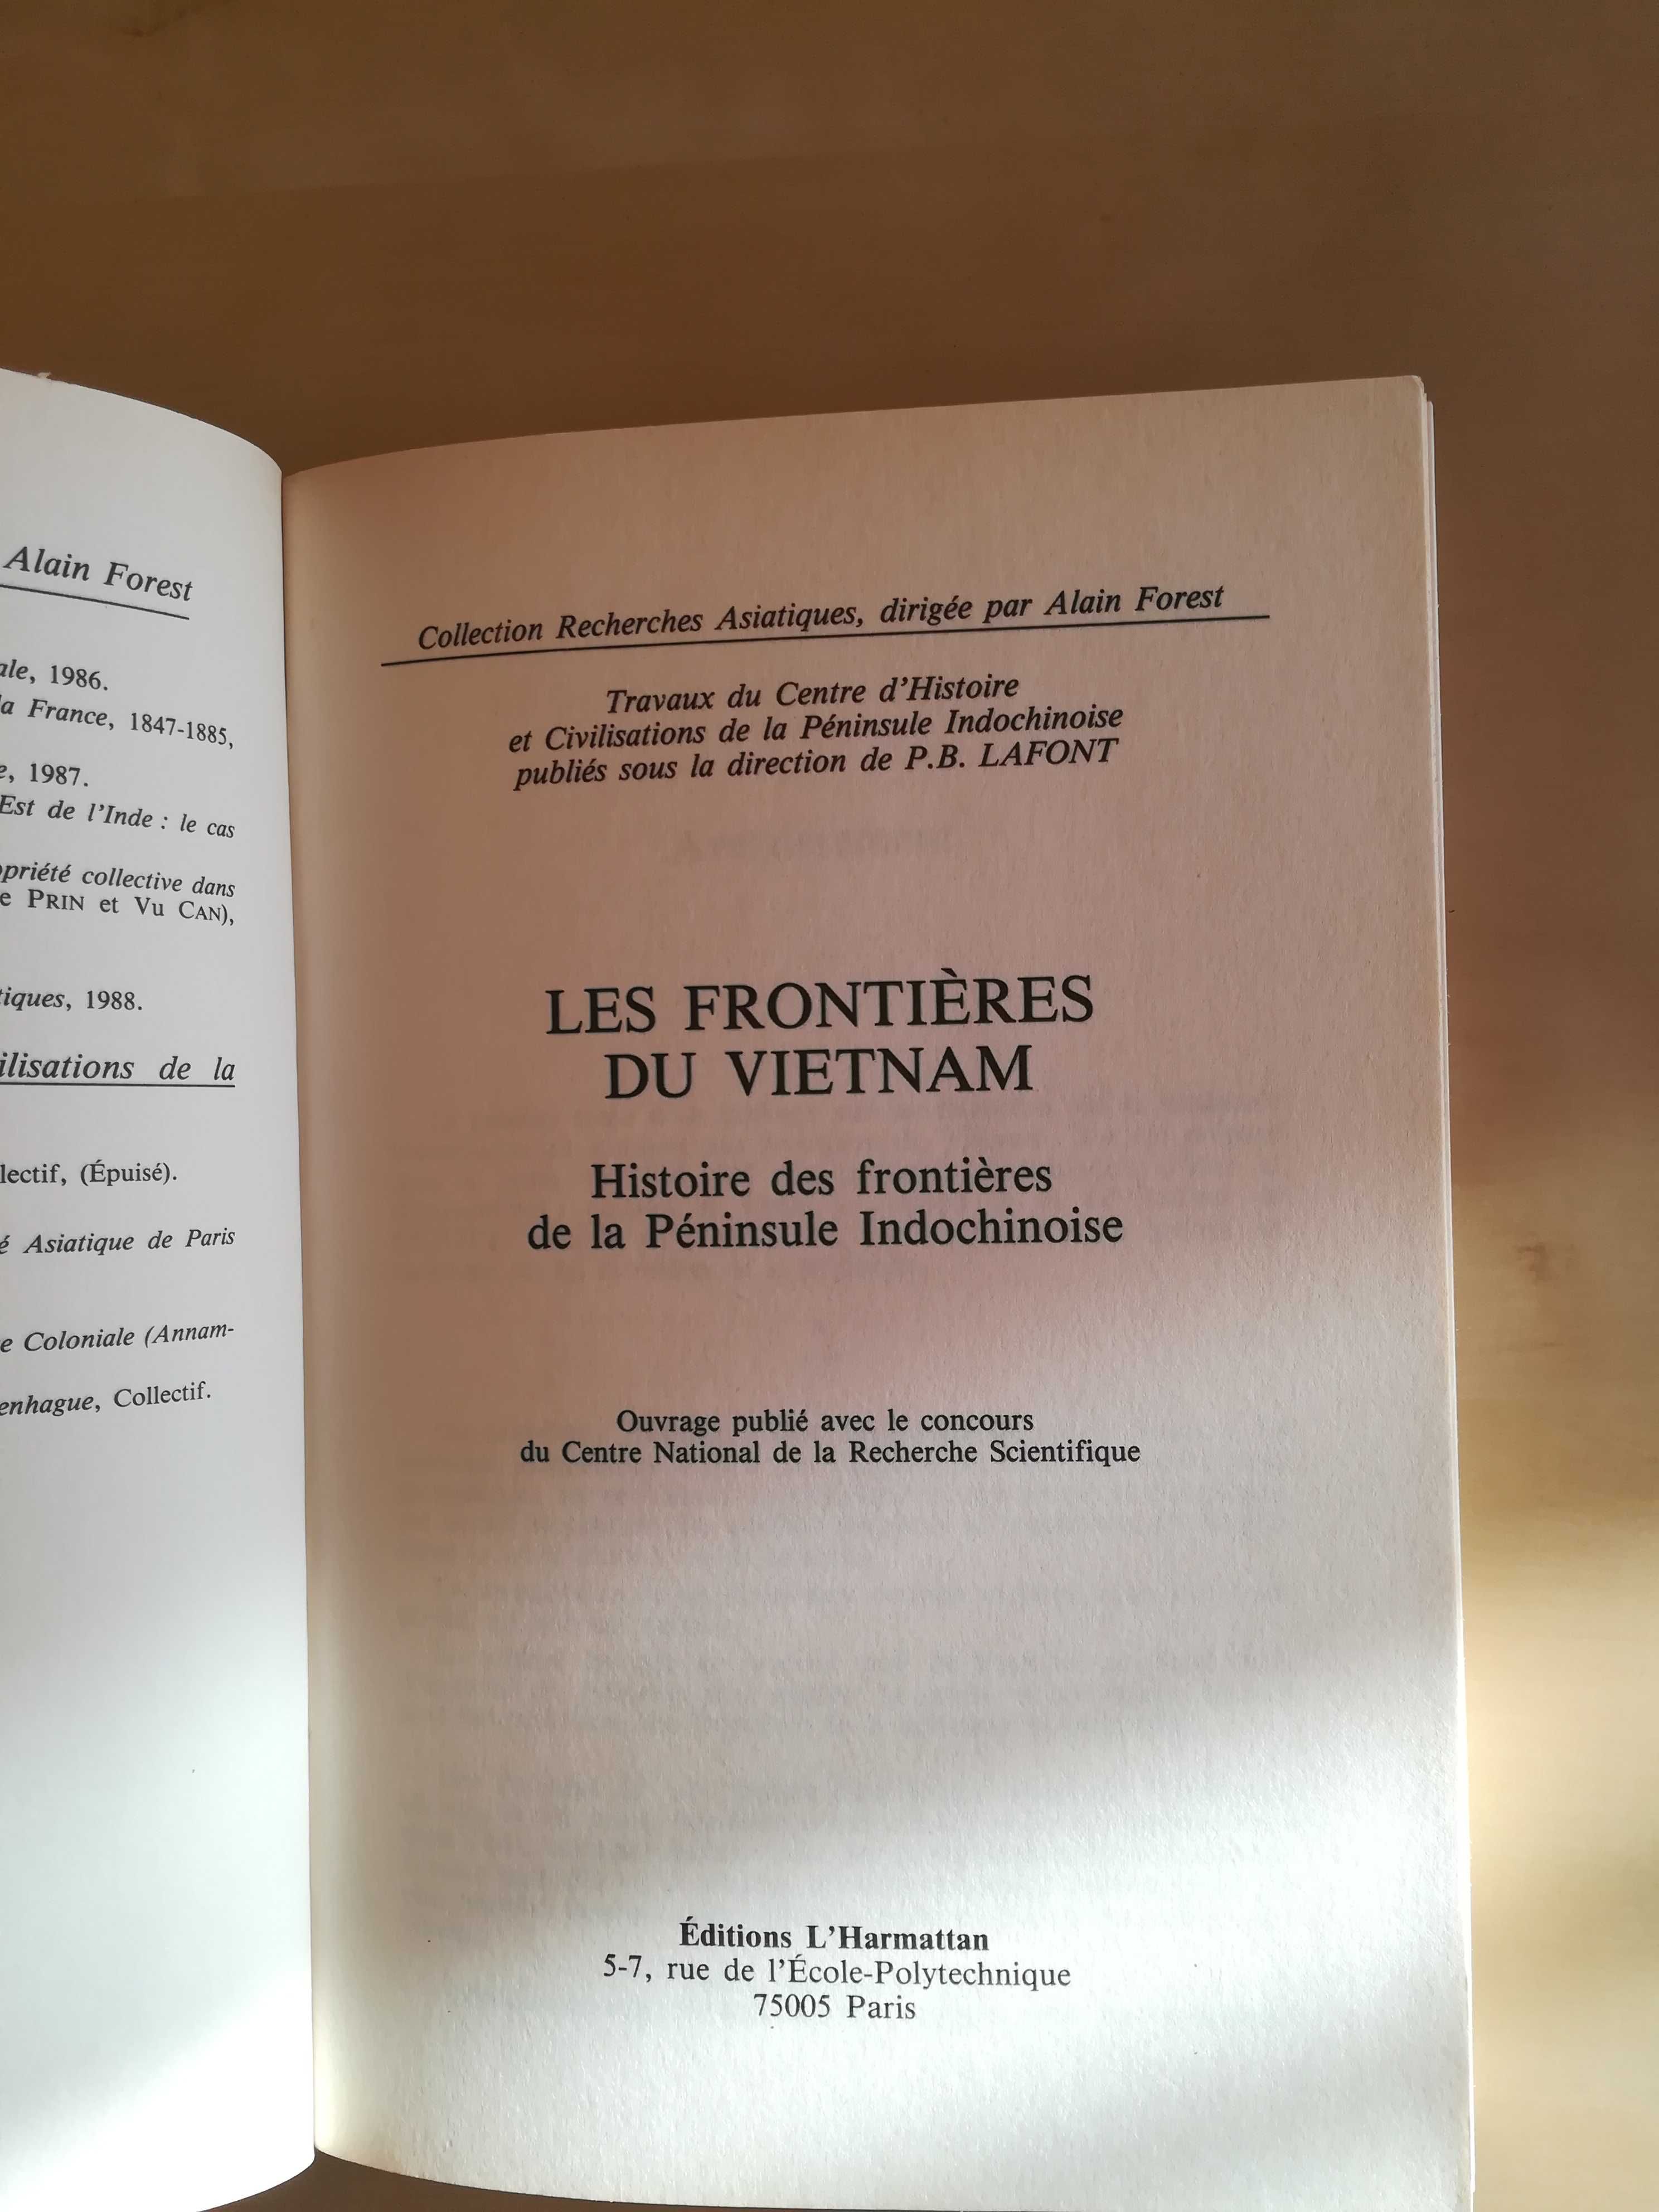 Les frontieres du Vietnam, P. B. Lafont, Paris 1989, L'Harmattan